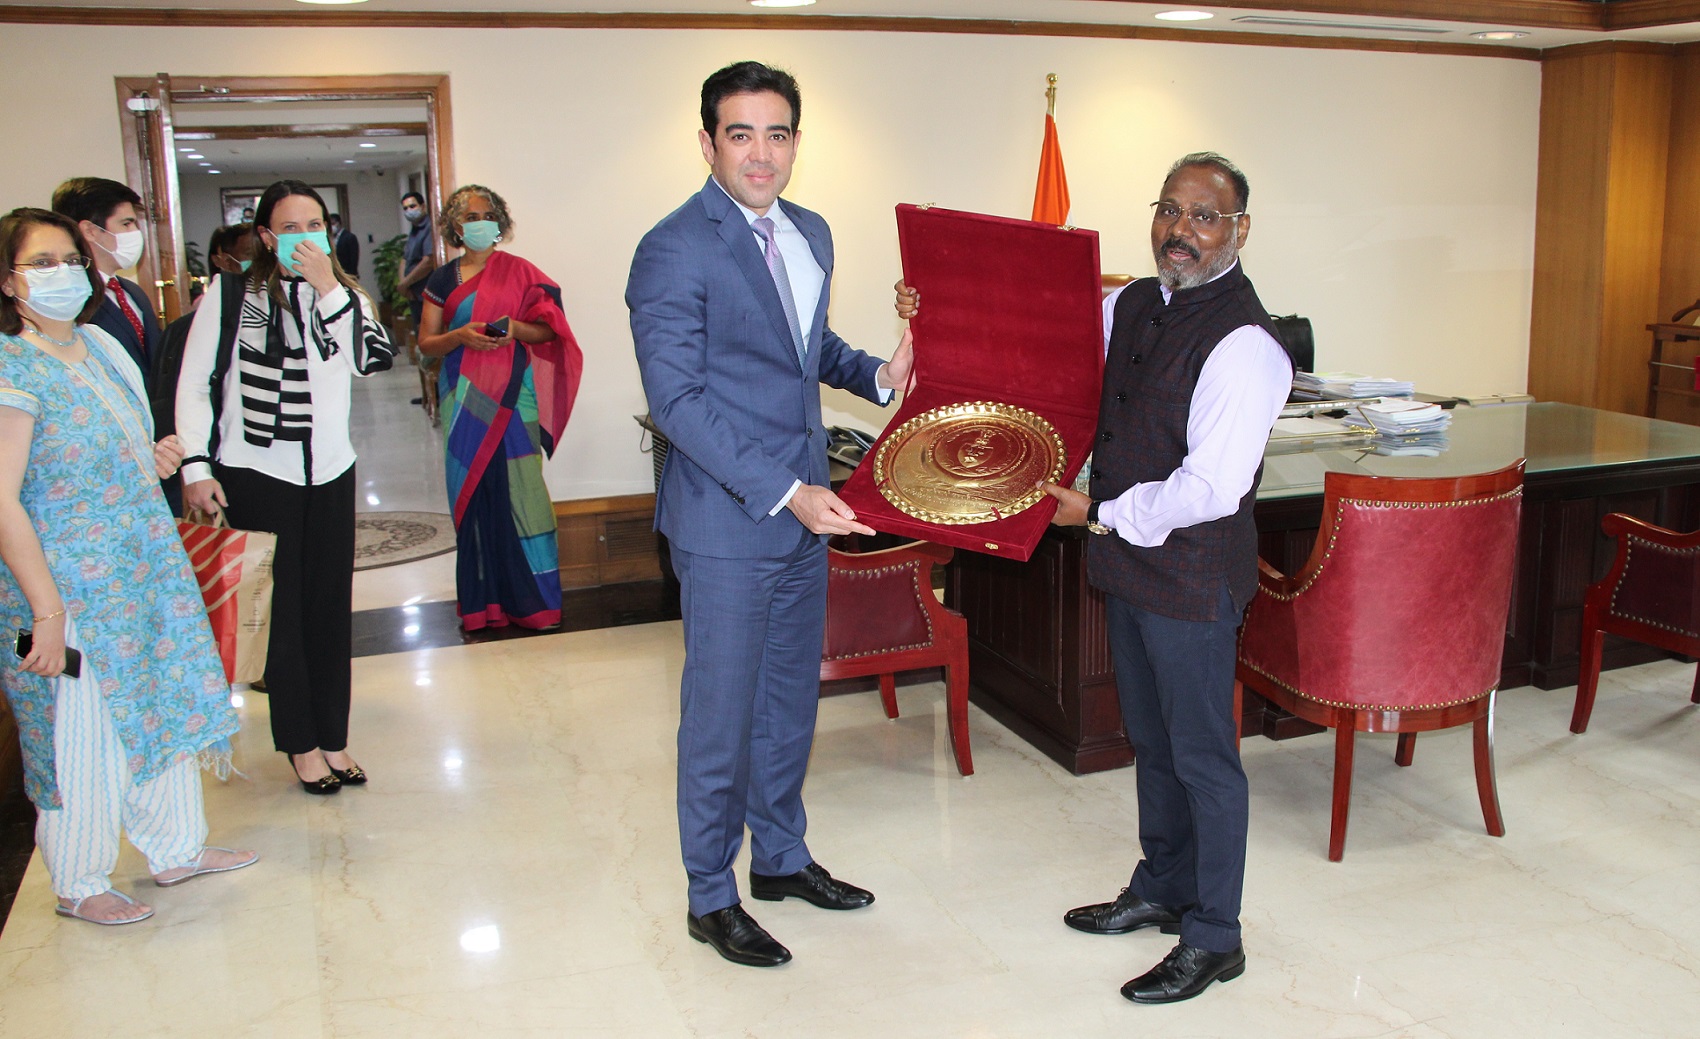 श्री. गिरीश चंद्र मुर्मू, भारत के सीएजी ने भारत के सीएजी कार्यालय के दौरे के दौरान ब्राजील के फेडरल कोर्ट ऑफ ऑडिट के उपाध्यक्ष, मंत्री ब्रूनो दांतास से मुलाकात की।